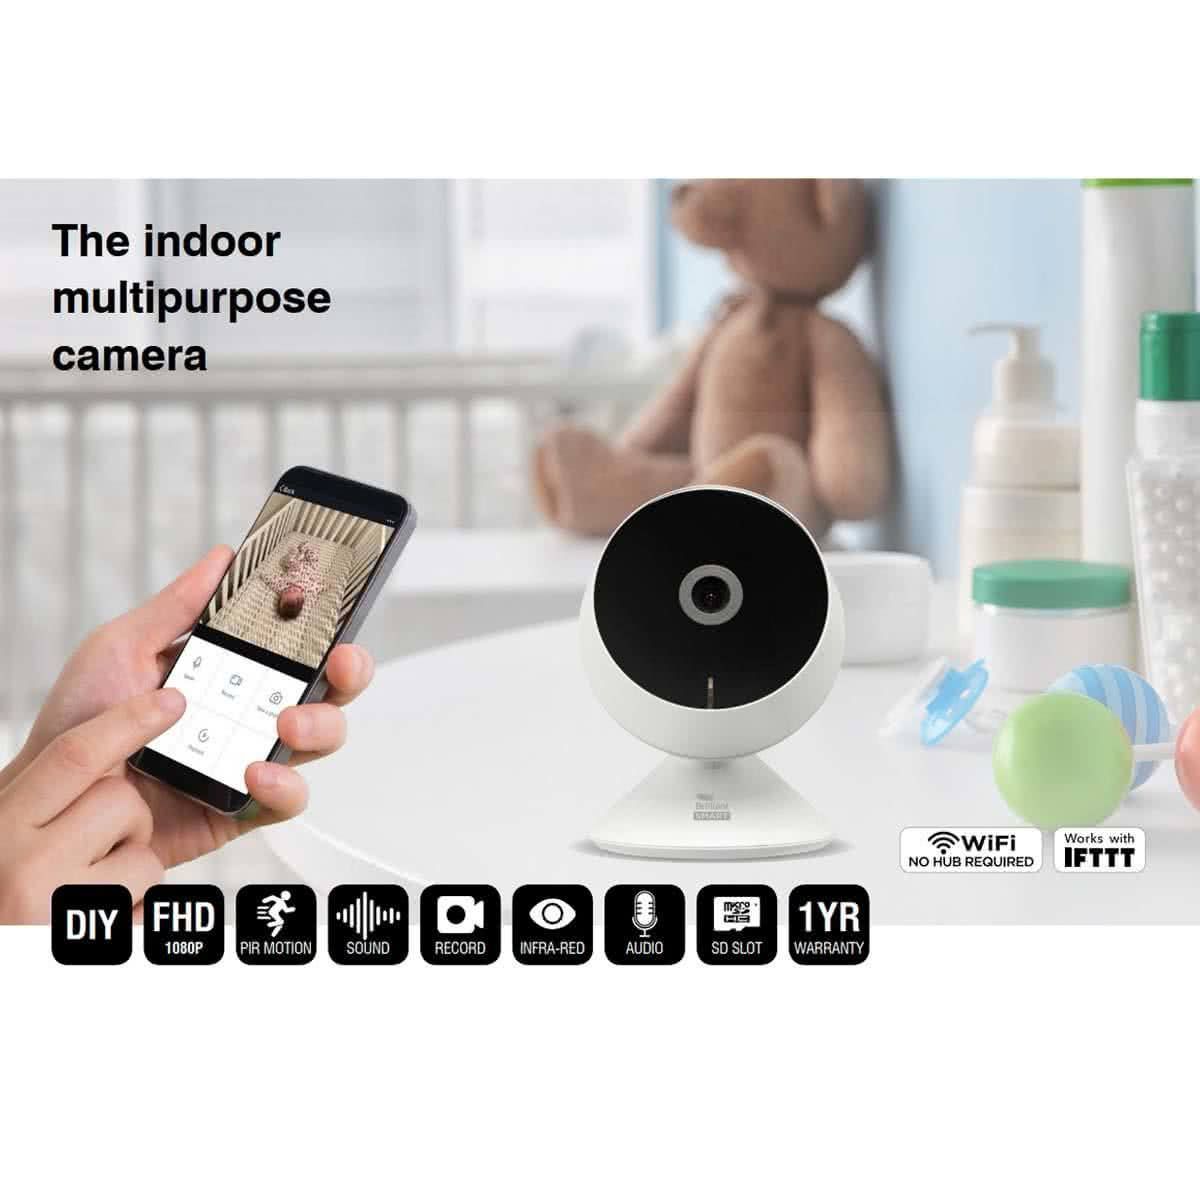 Smart Mia 1080p Hd Indoor Multipurpose Camera